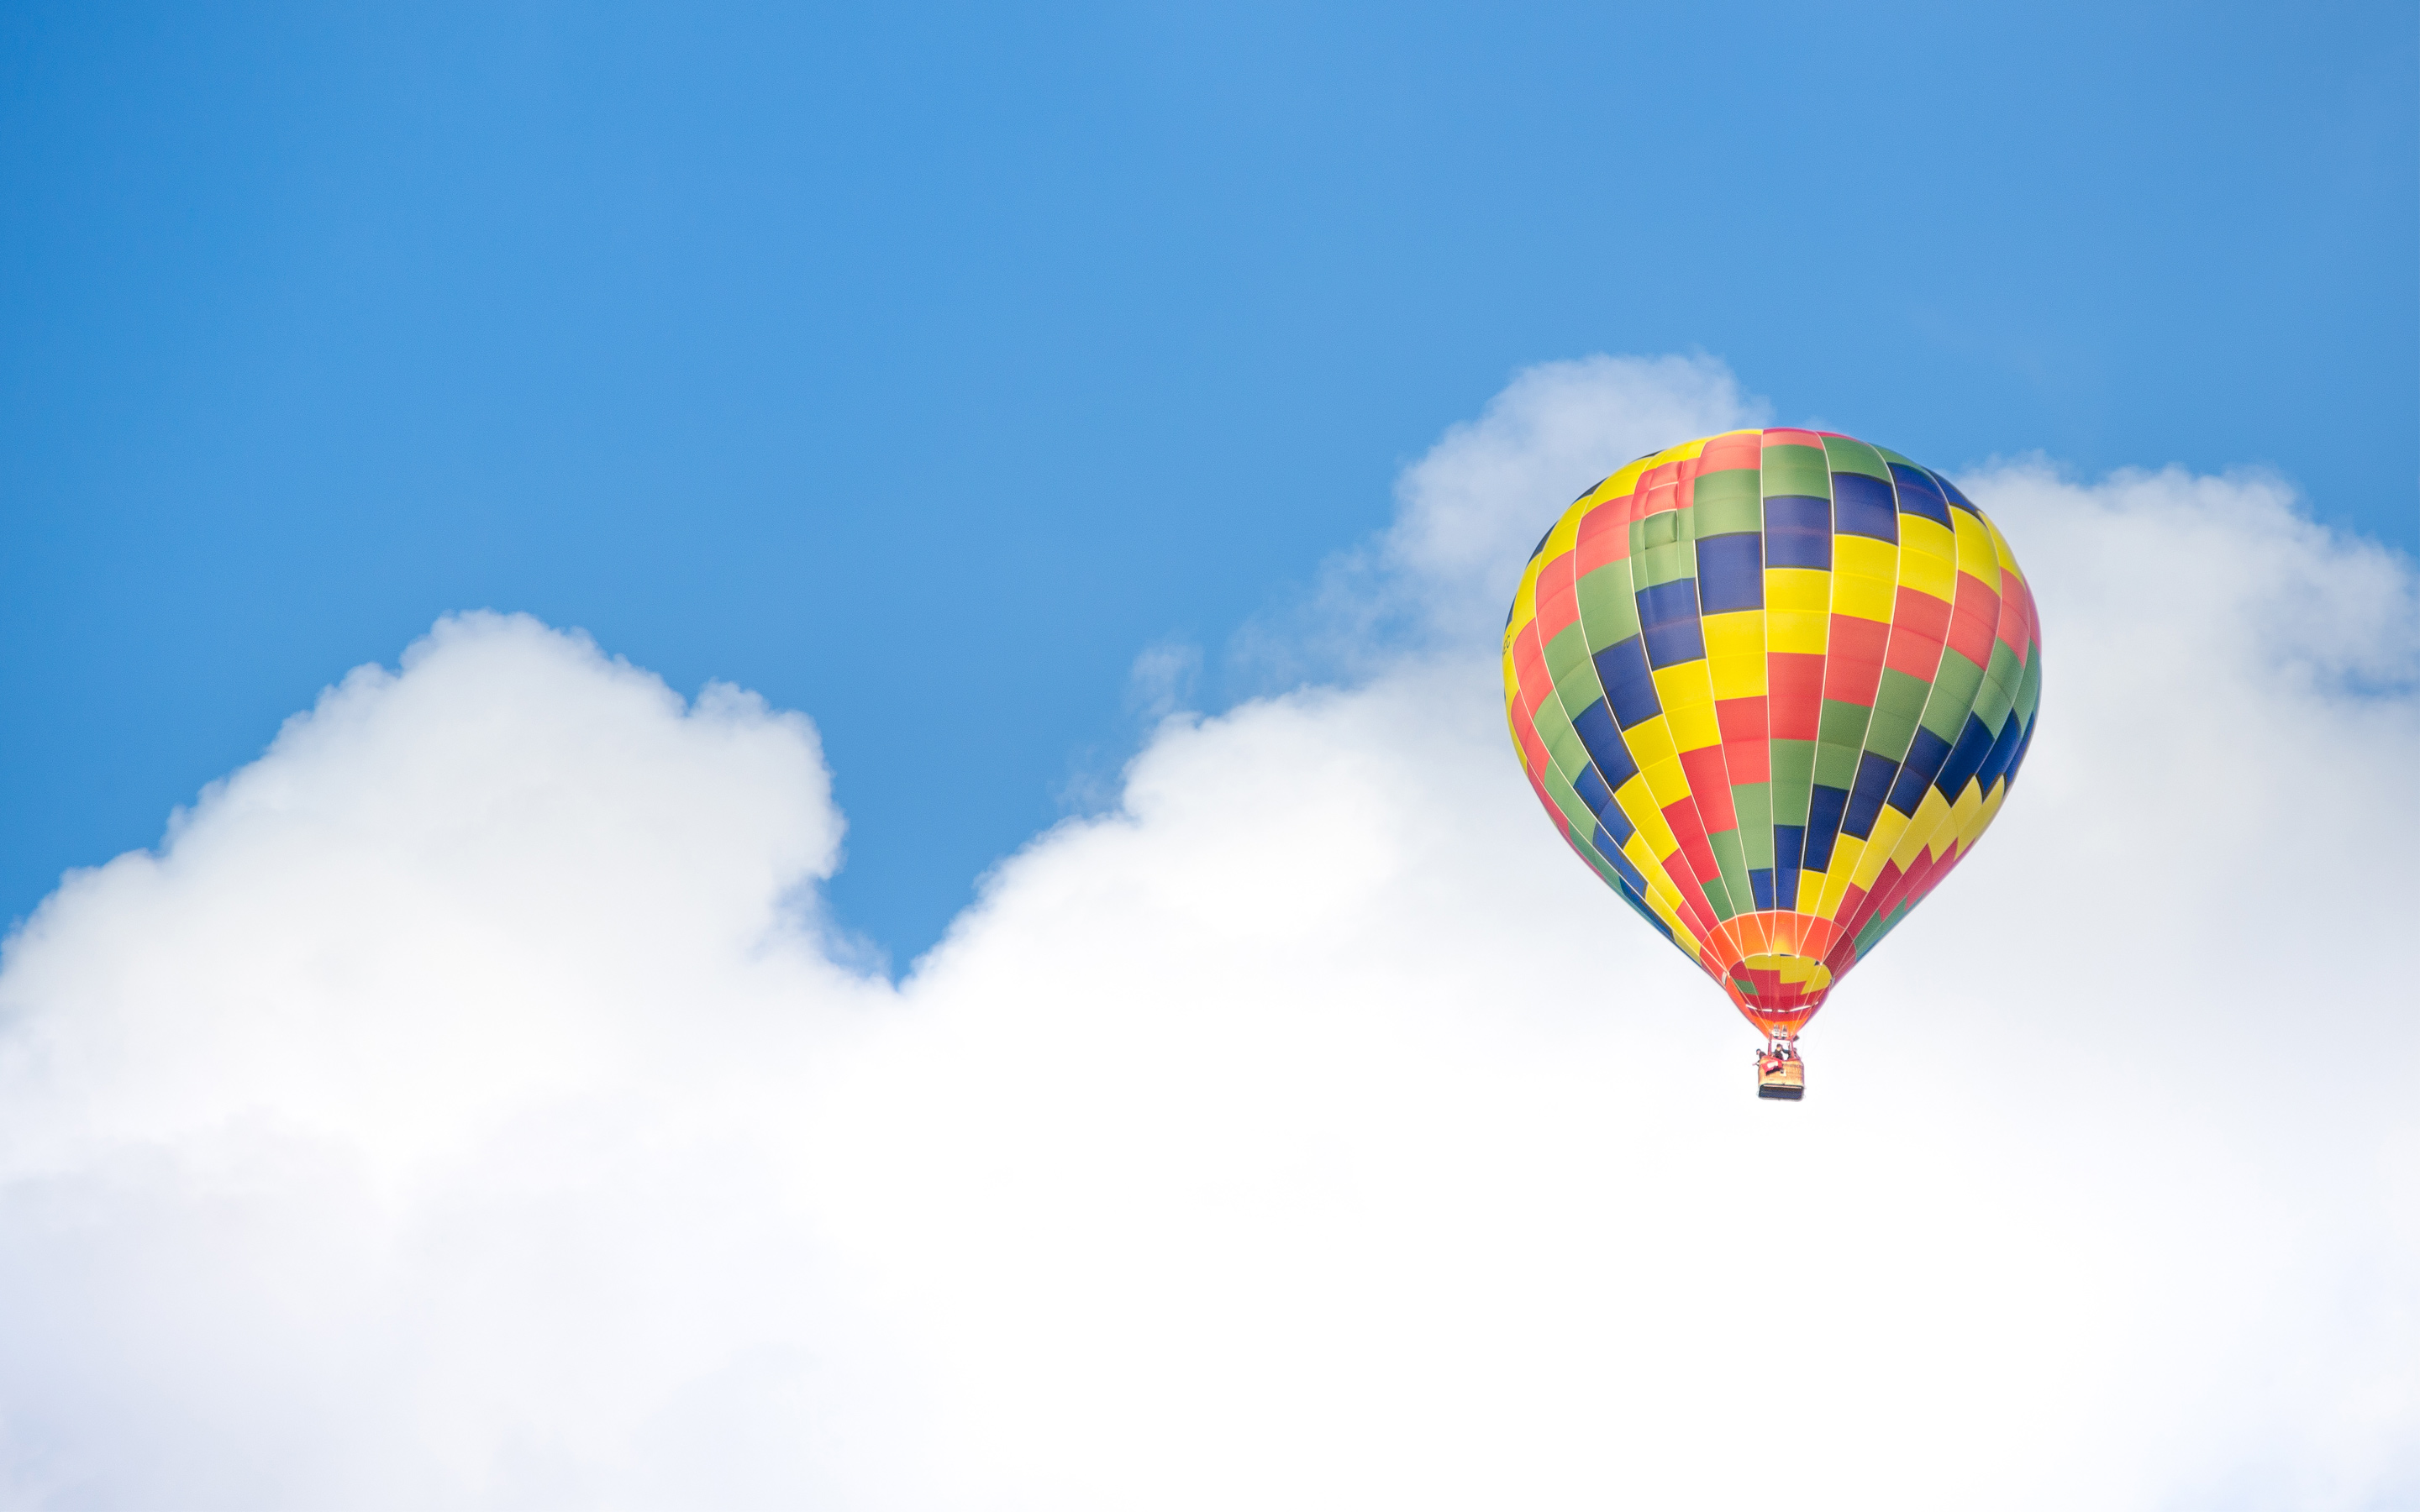 Hot Air Balloon Ride Sky Clouds5859118859 - Hot Air Balloon Ride Sky Clouds - Sky, Ride, idols, Hot, Clouds, Balloon, Air